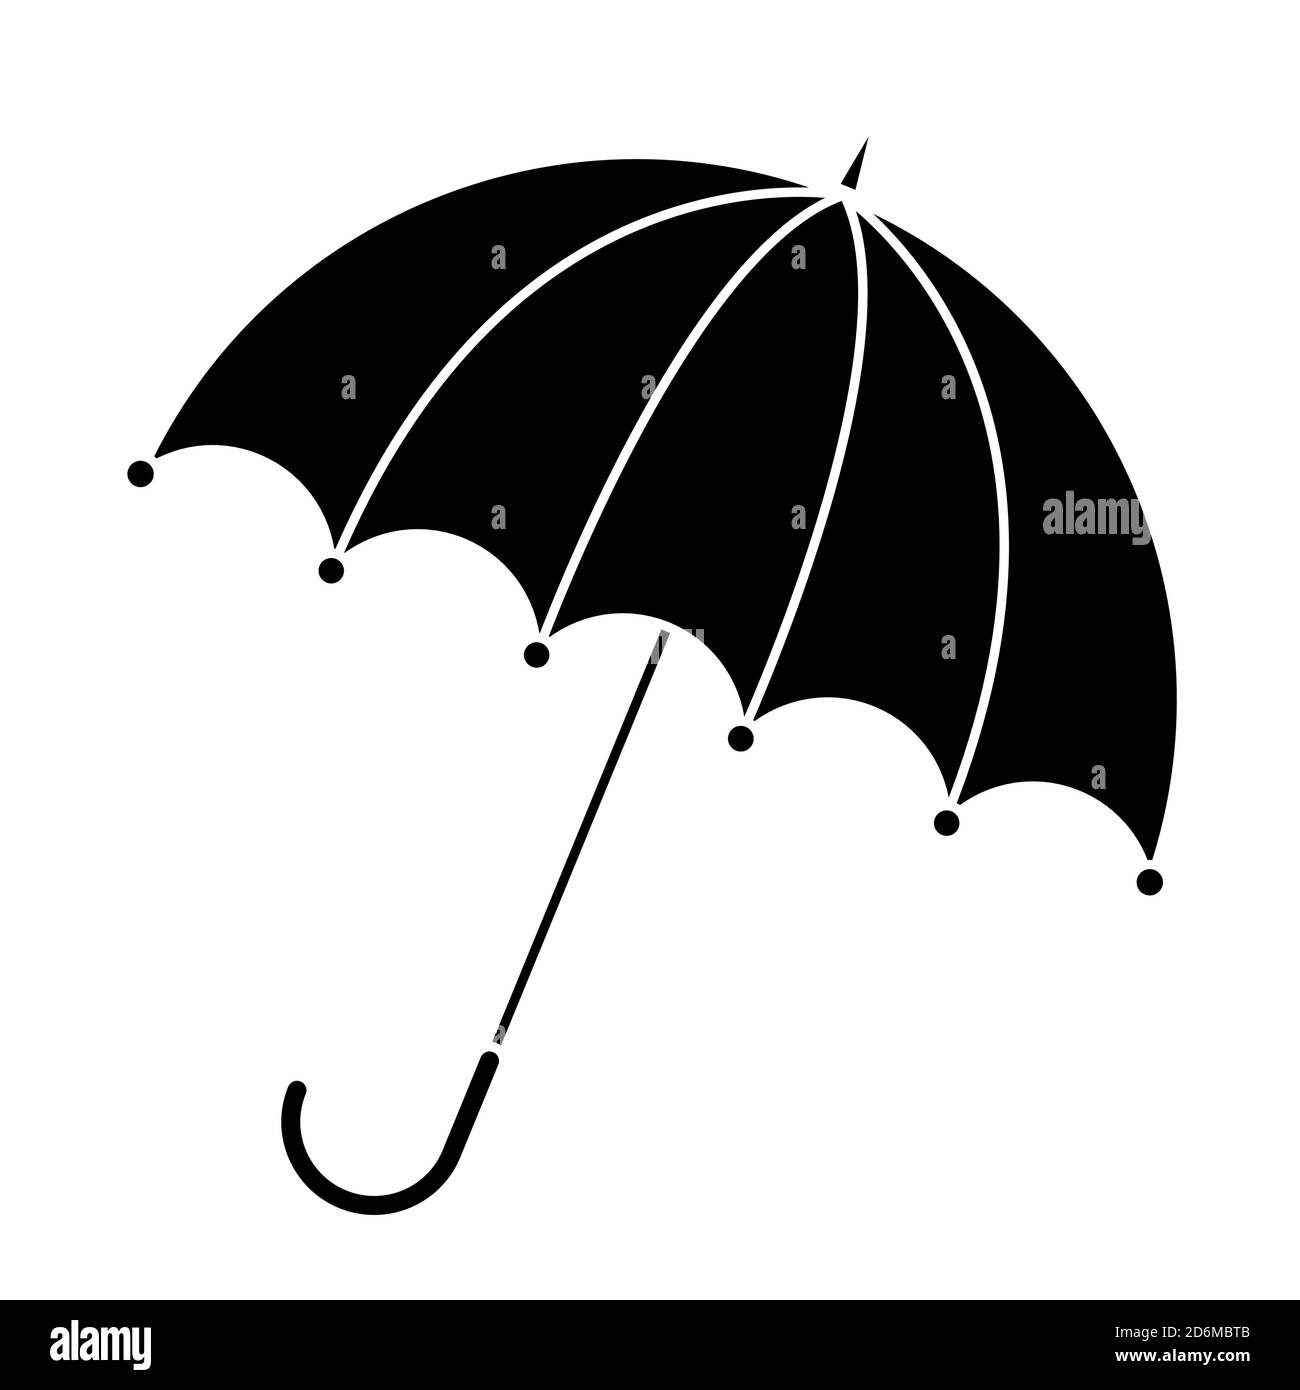 Silueta de paraguas aislada sobre blanco. Icono de sombrilla abierta en  blanco y negro. Ilustración del elemento gráfico de otoño de protección  contra la lluvia. Vector otoñal symb Imagen Vector de stock -